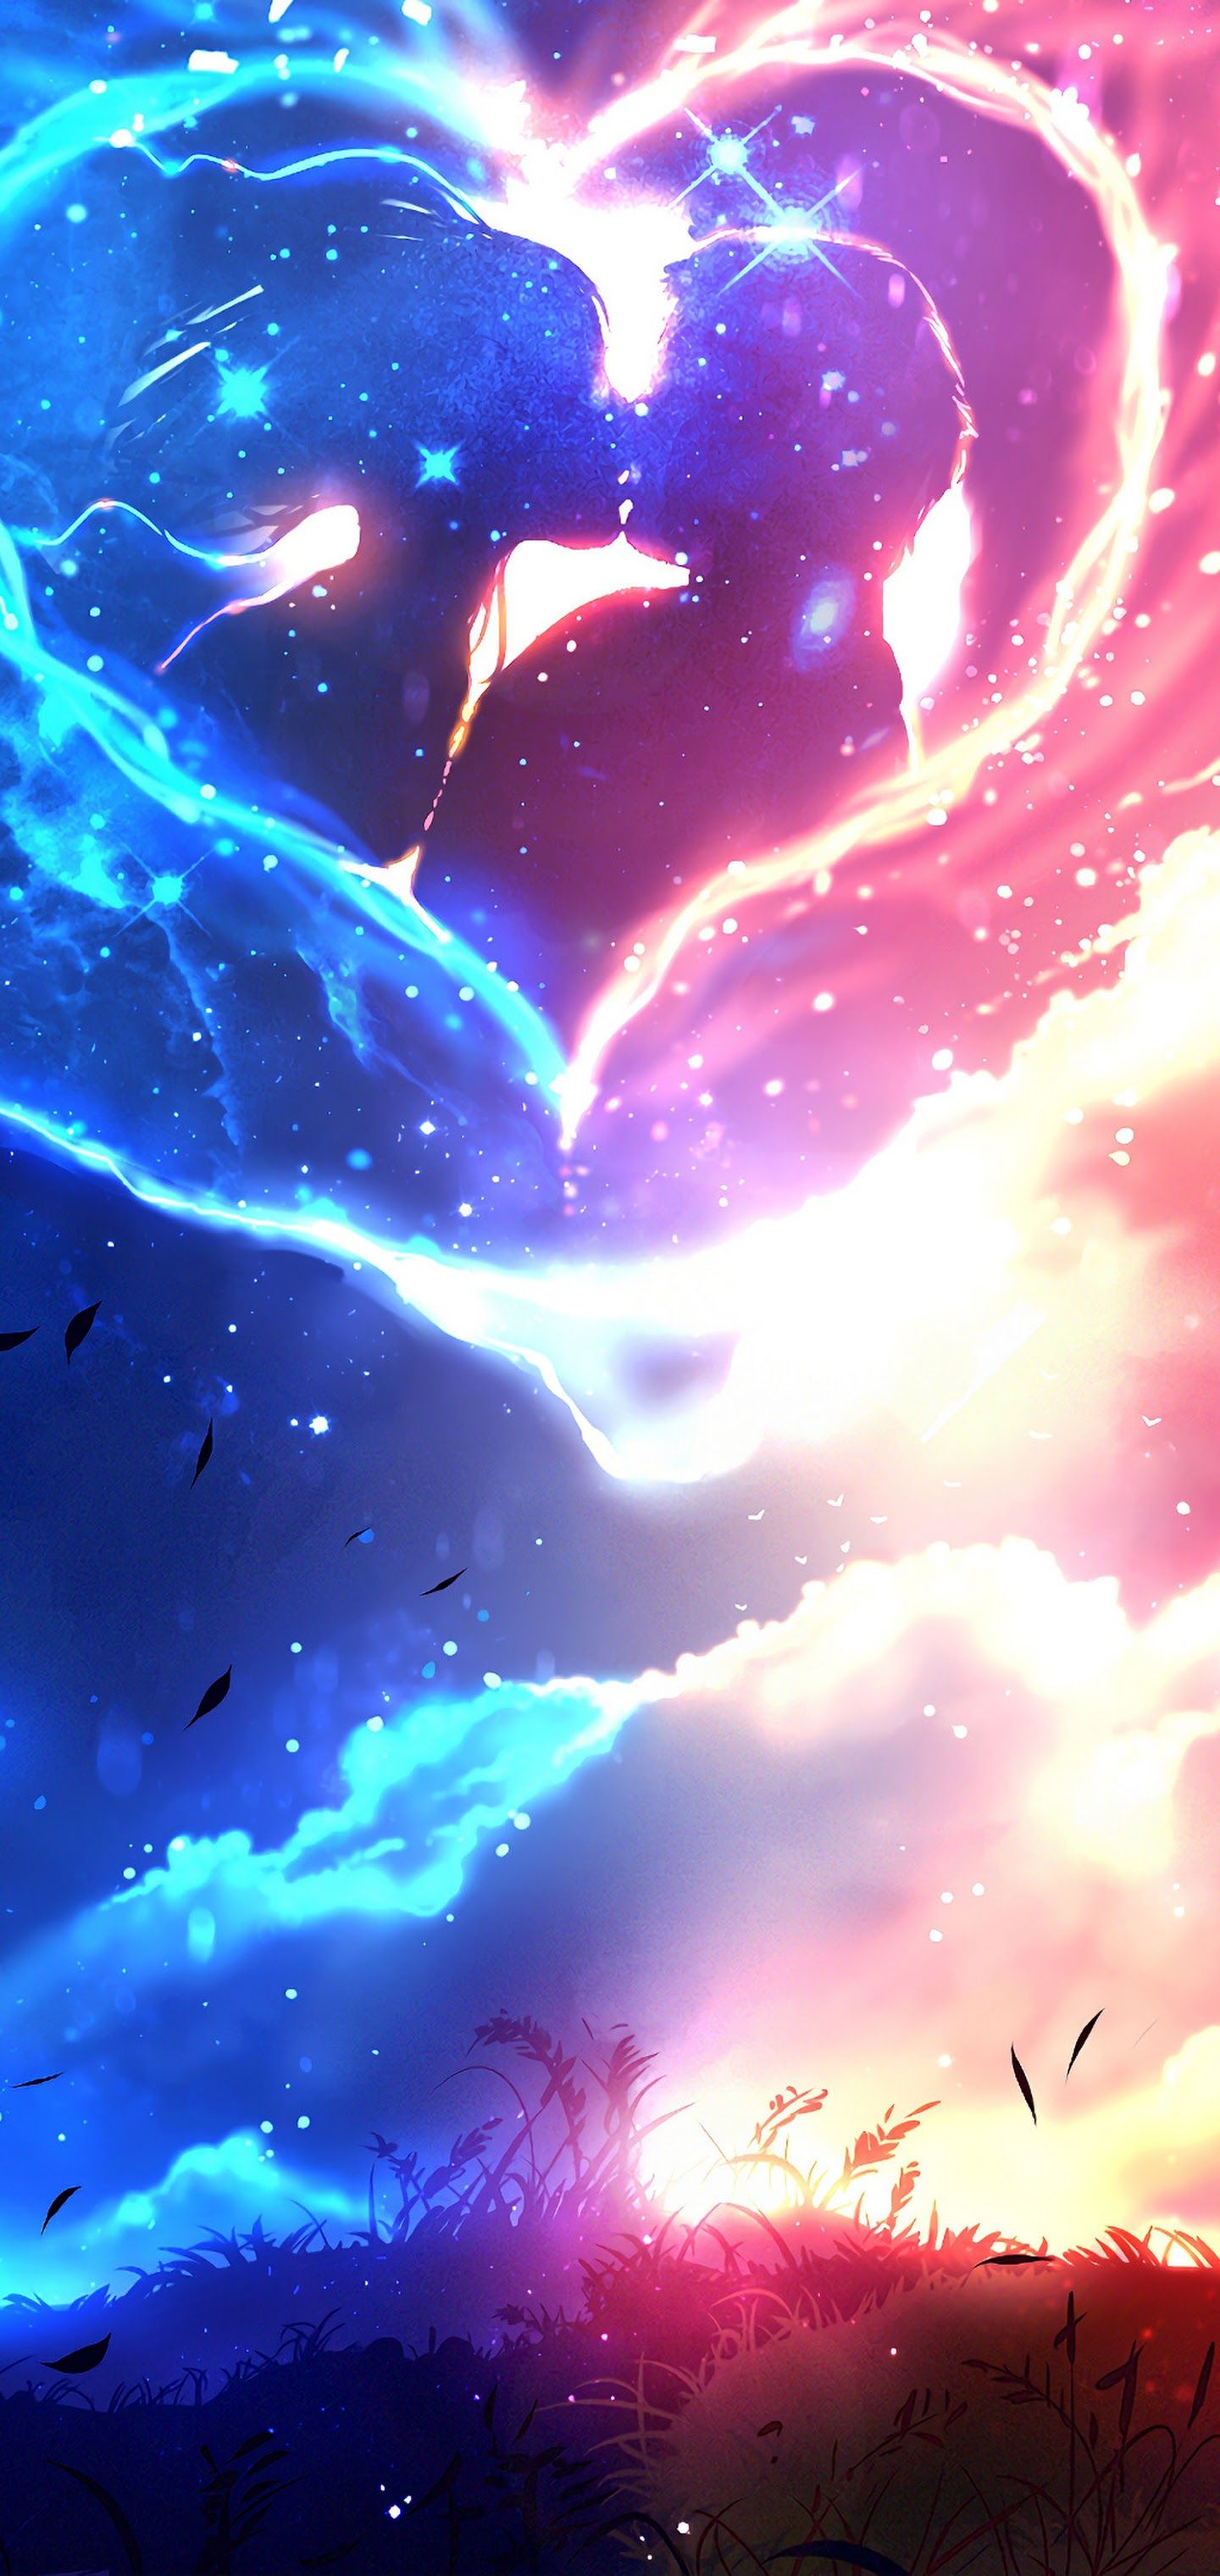 Bạn là fan của Anime và mong muốn được khám phá thiên hà xa xôi xa vời? Bạn sẽ tìm thấy tất cả trong hình ảnh Anime Blue Galaxy này! Hãy tới đây và bắt đầu chuyến phiêu lưu tới vô tận không gian!